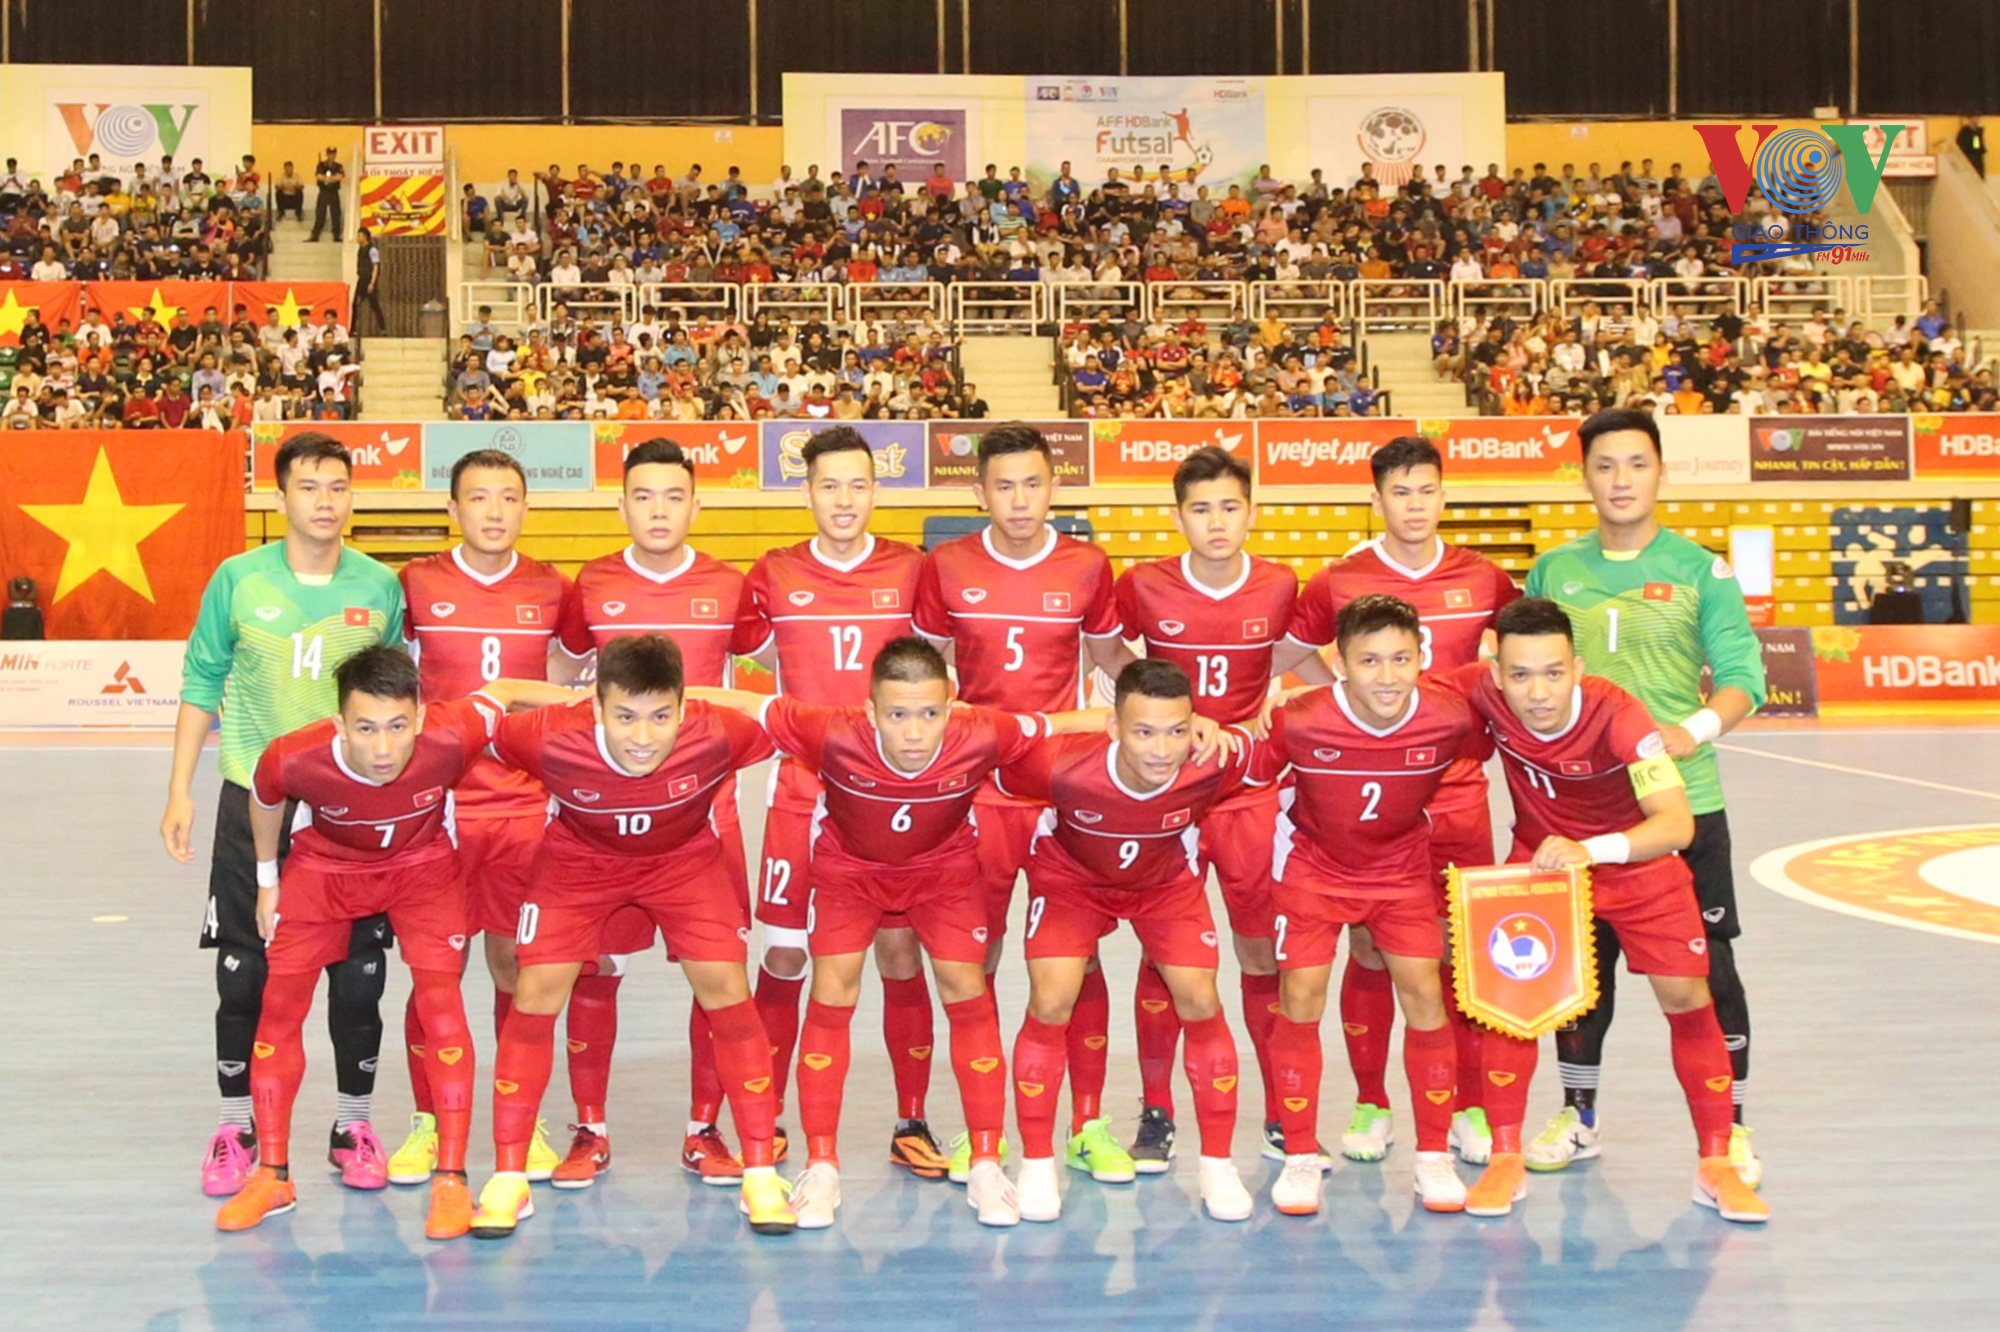 Đội hình ĐT Futsal Việt Nam dự giải Futsal HDBank vô địch Đông Nam Á 2019